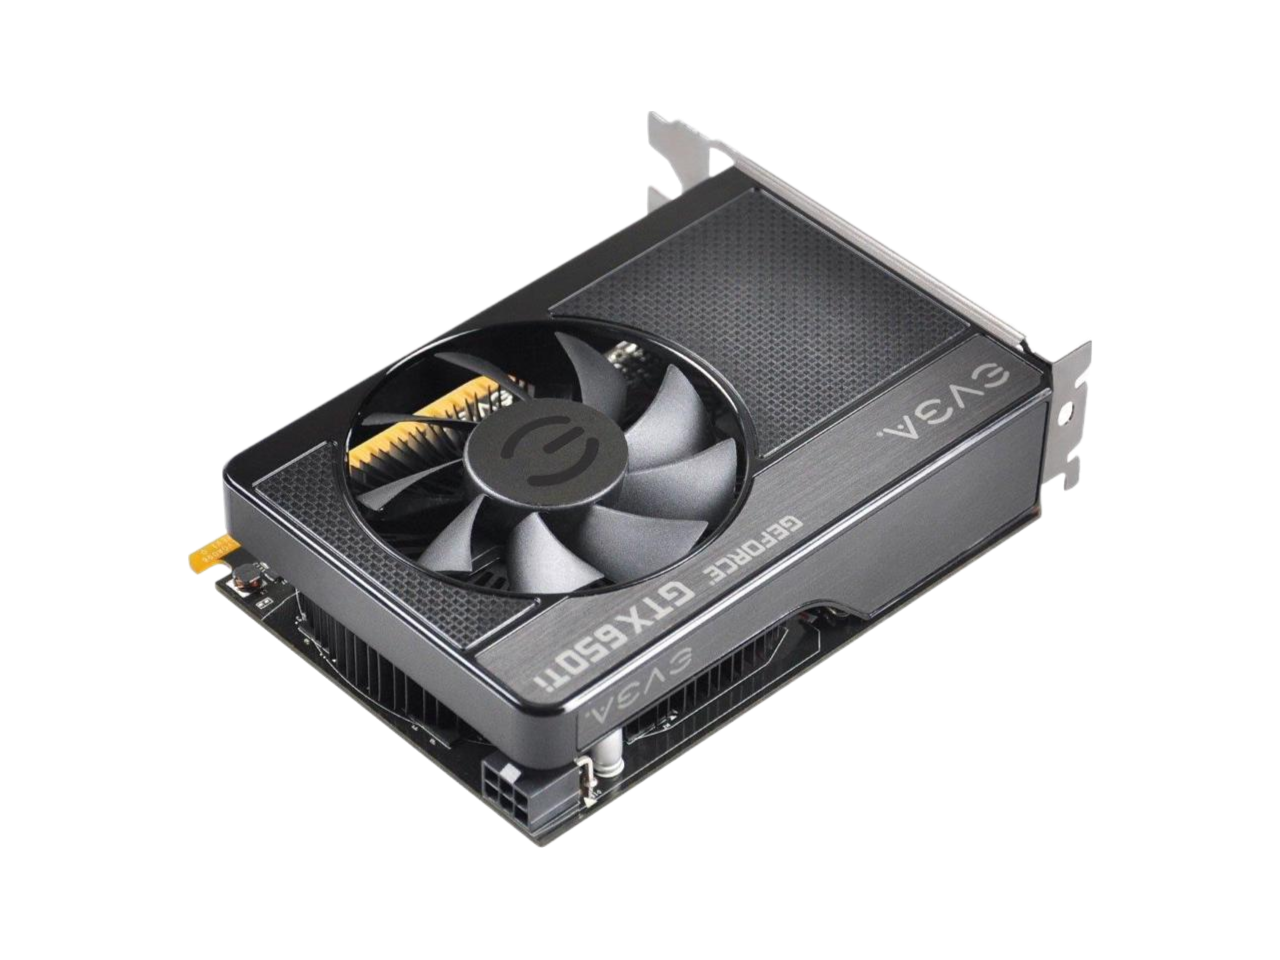 EVGA GeForce GTX 650 Ti SSC 1024MB GDDR5 128bit Dual Dual-Link DVI Mini HDMI Graphics Card 01G-P4-3652-KR